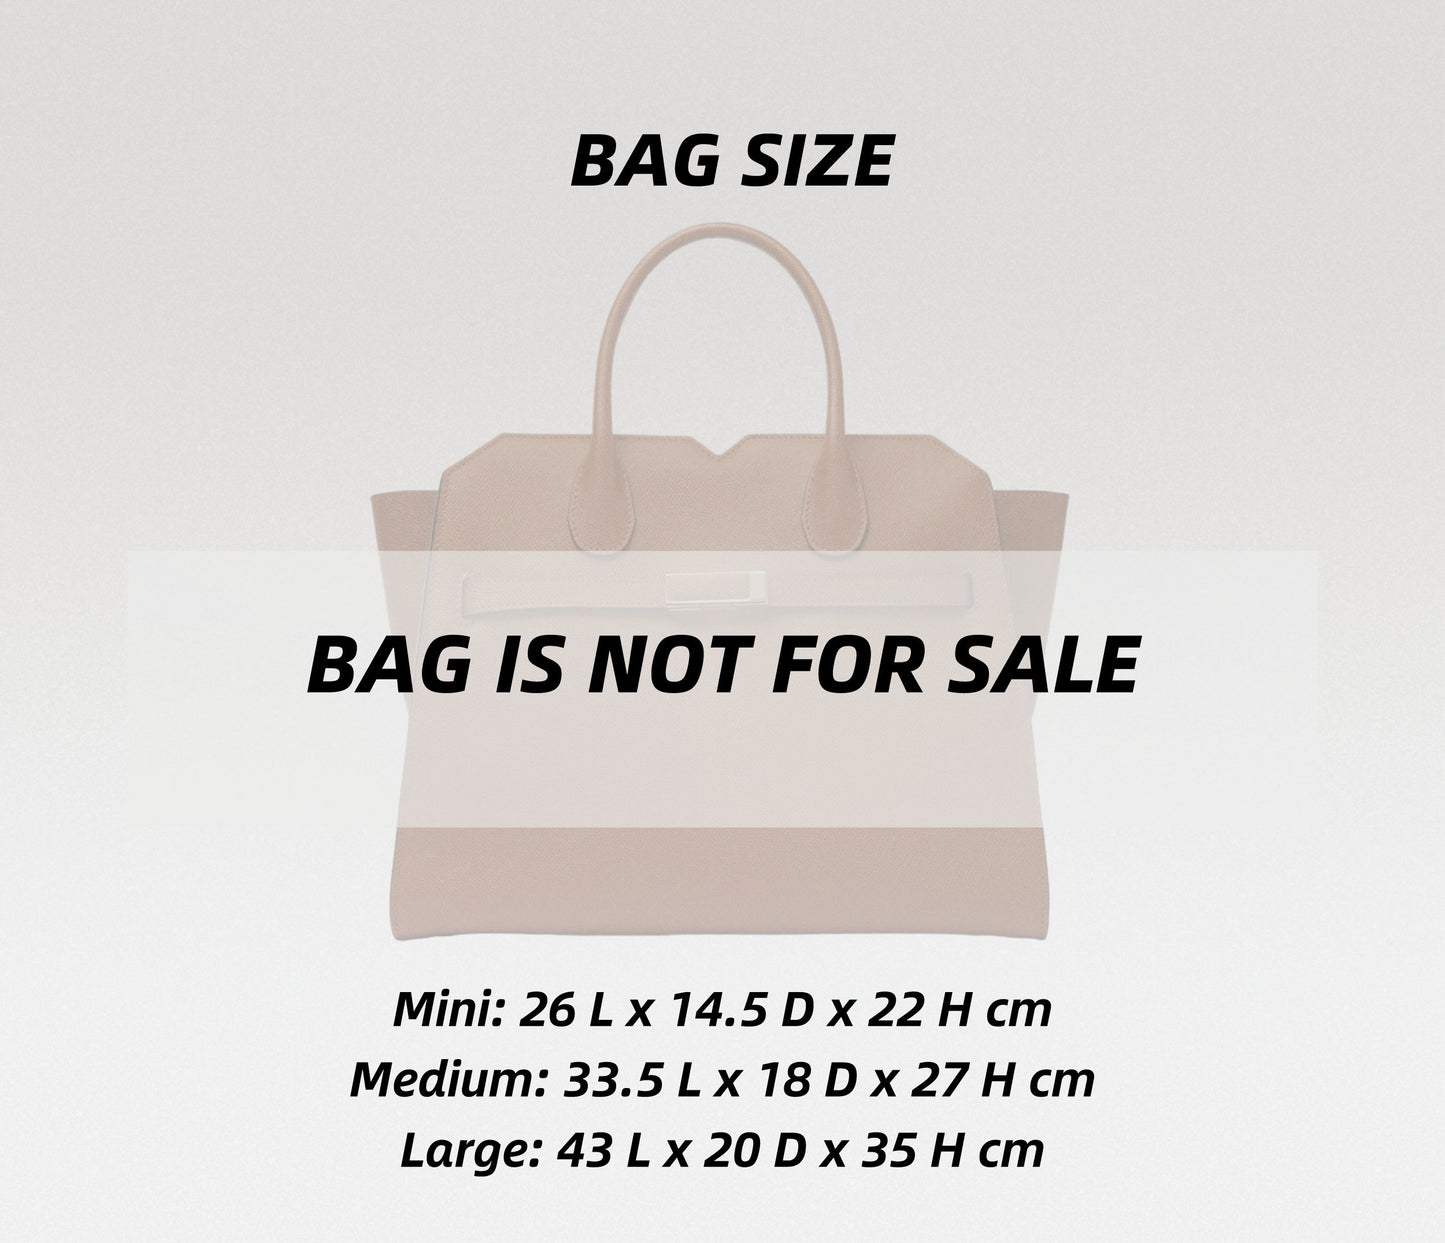 Bag Organizer For Milano Two Handles Bag | Bag Insert For Tote Bag | Felt Bag Organizer For Handbag Bag